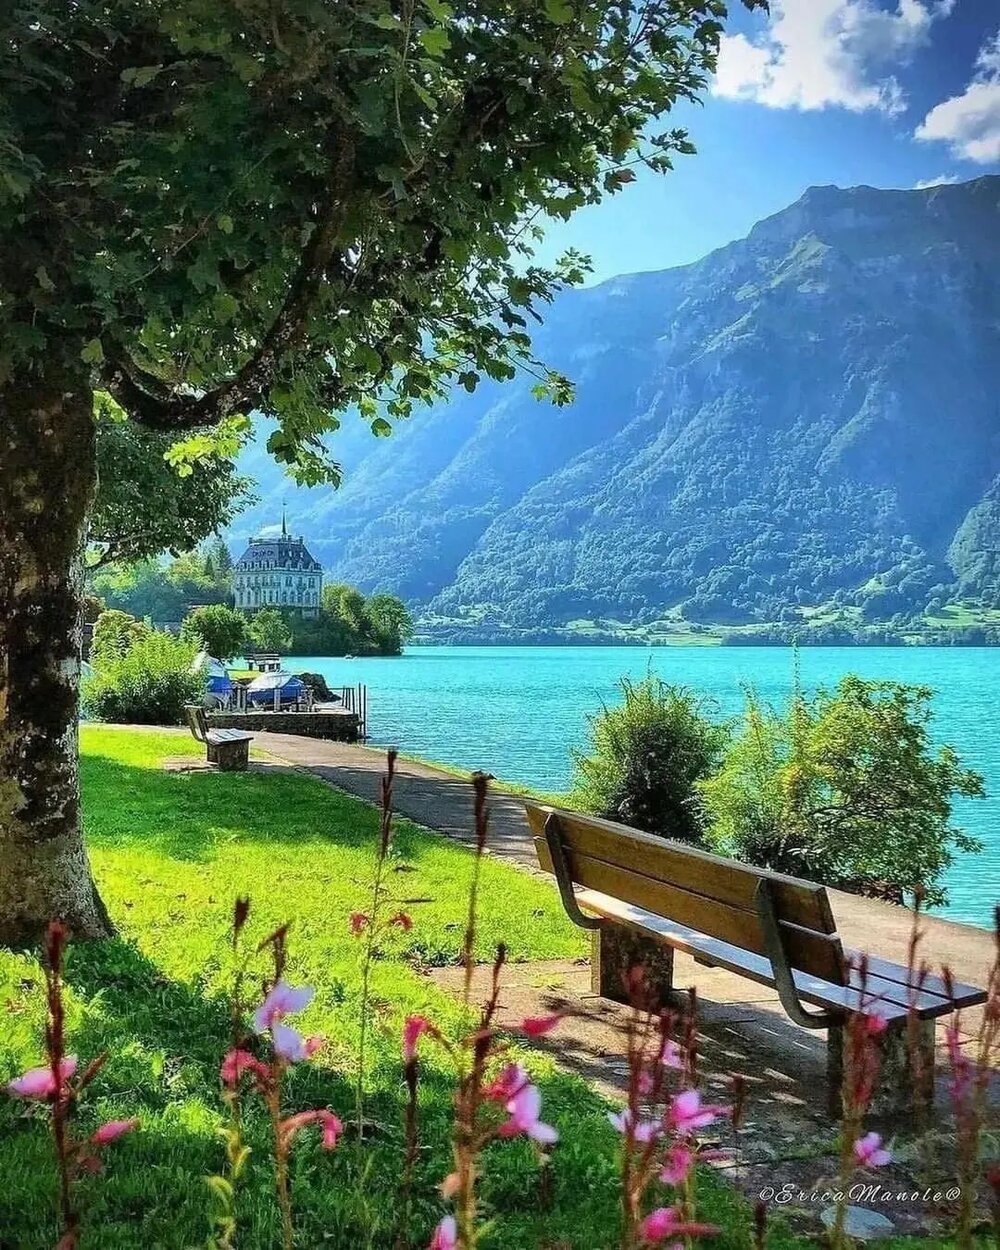 Gorgeous Swiss summer! 😊🇨🇭

Like Switzerland?
𝙁𝙤𝙡𝙡𝙤𝙬 👉@codinature
𝙁𝙤𝙡𝙡𝙤𝙬 👉@codinature 👈

📸: @codinature
1) Iseltwald
2) Les Diablerets
3) Lungern 
4) Nidwalden
5) Switzerlnad 
6) Sisikon
7) Schwyz
8) Lugano
9) Appenzell
10) Canton 